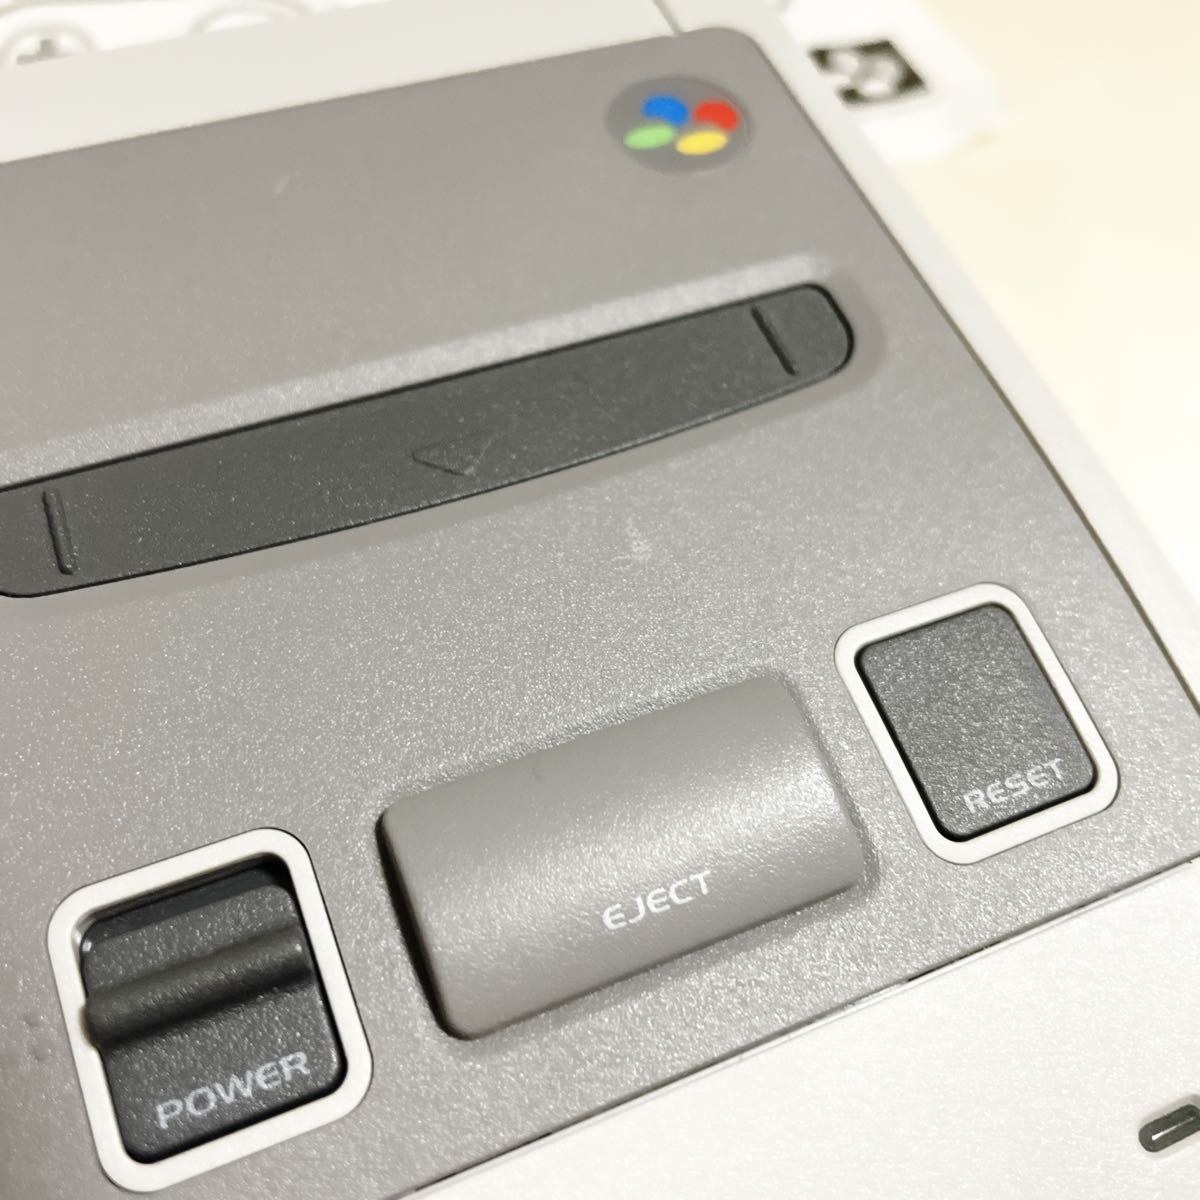 スーパーファミコン クラシックミニ Nintendo 任天堂 ニンテンドー ゲーム機